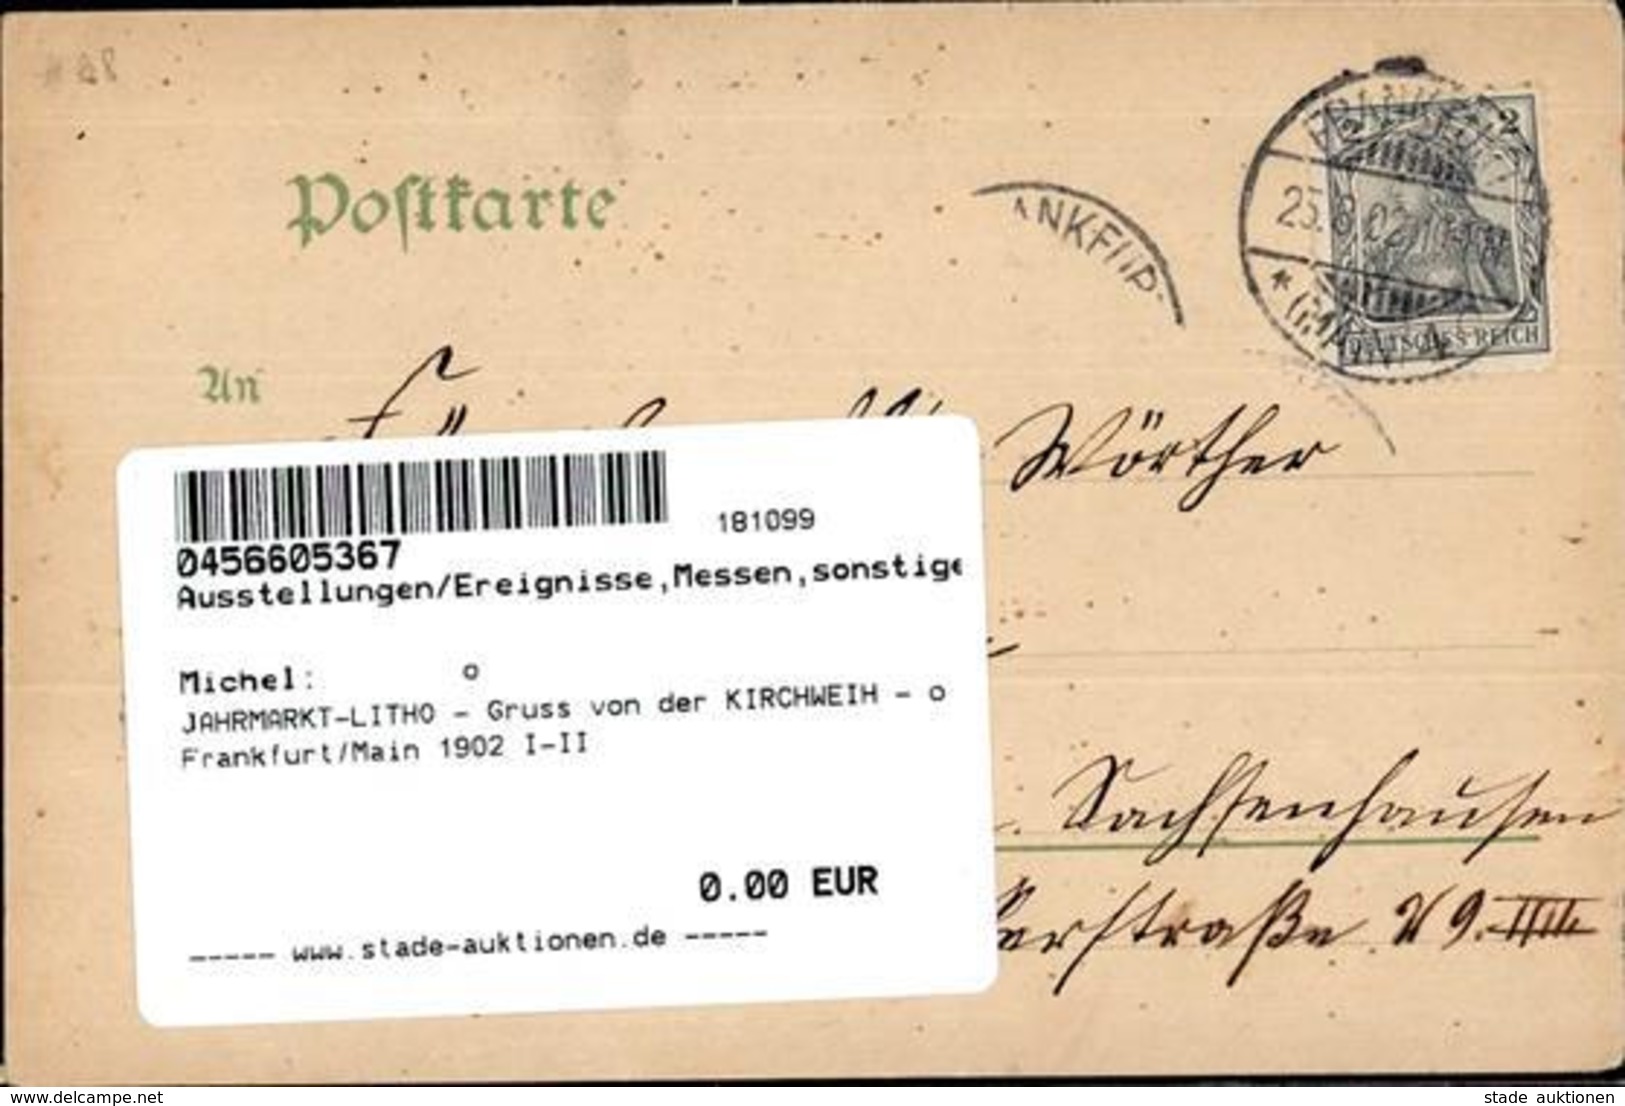 JAHRMARKT-LITHO - Gruss Von Der KIRCHWEIH - O Frankfurt/Main 1902 I-II Montagnes - Esposizioni